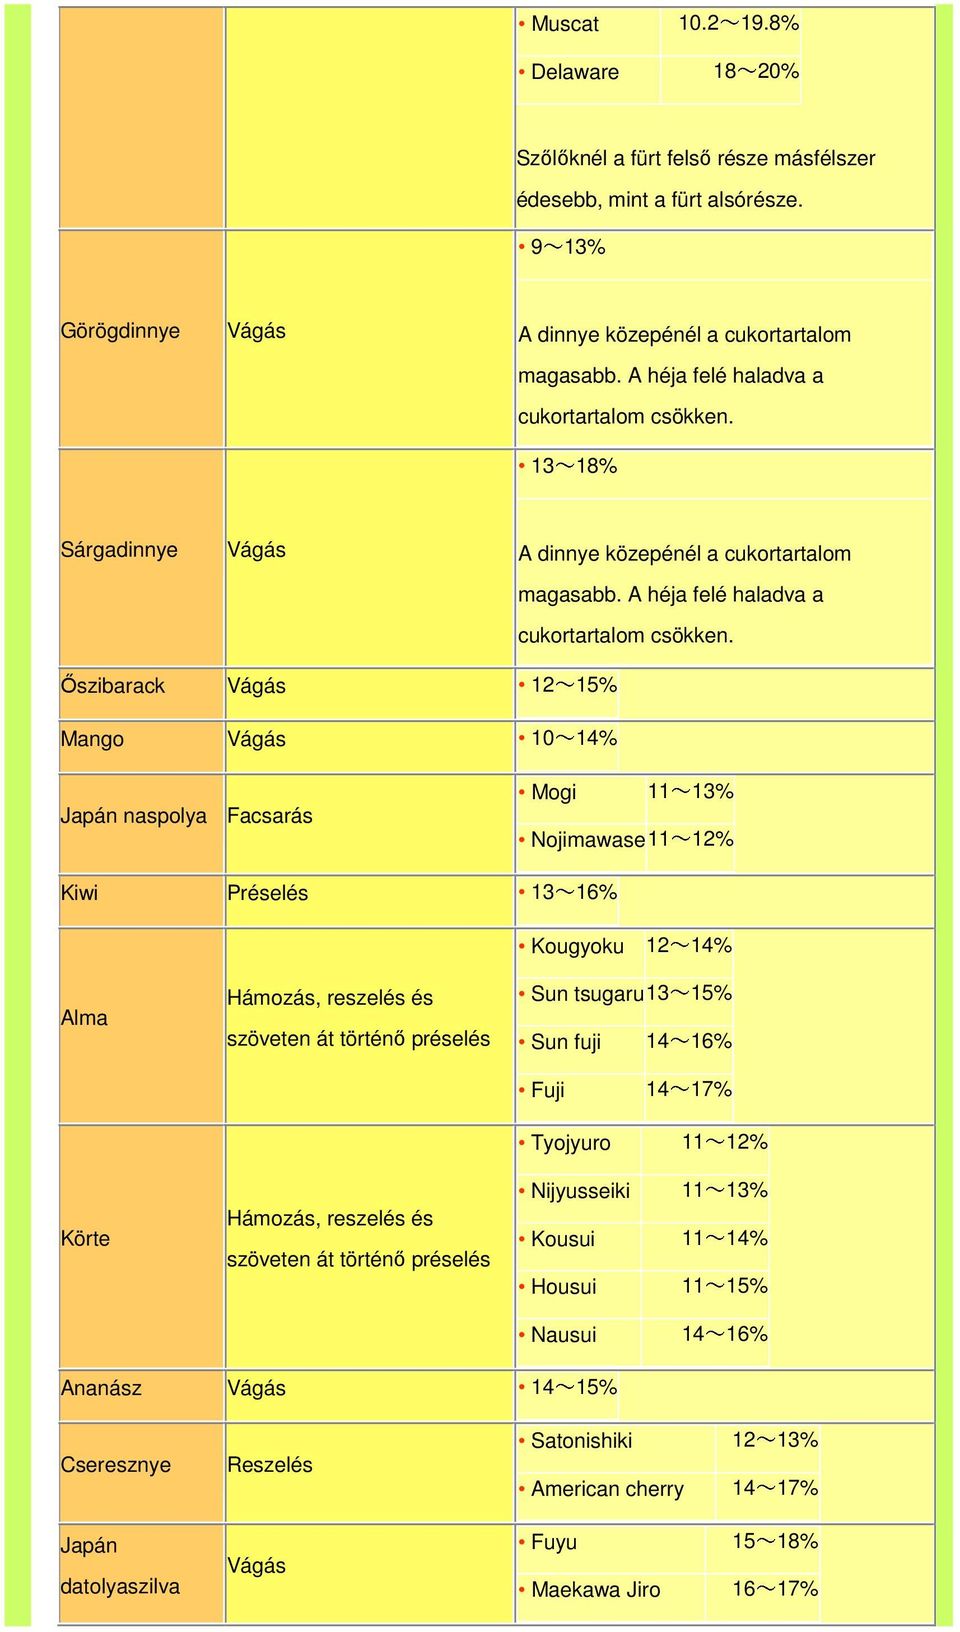 Őszibarack 12~15% Mango 10~14% Japán naspolya Facsarás Mogi 11~13% Nojimawase 11~12% Kiwi 13~16% Kougyoku 12~14% Alma Körte Hámozás, reszelés és szöveten át Hámozás, reszelés és szöveten át